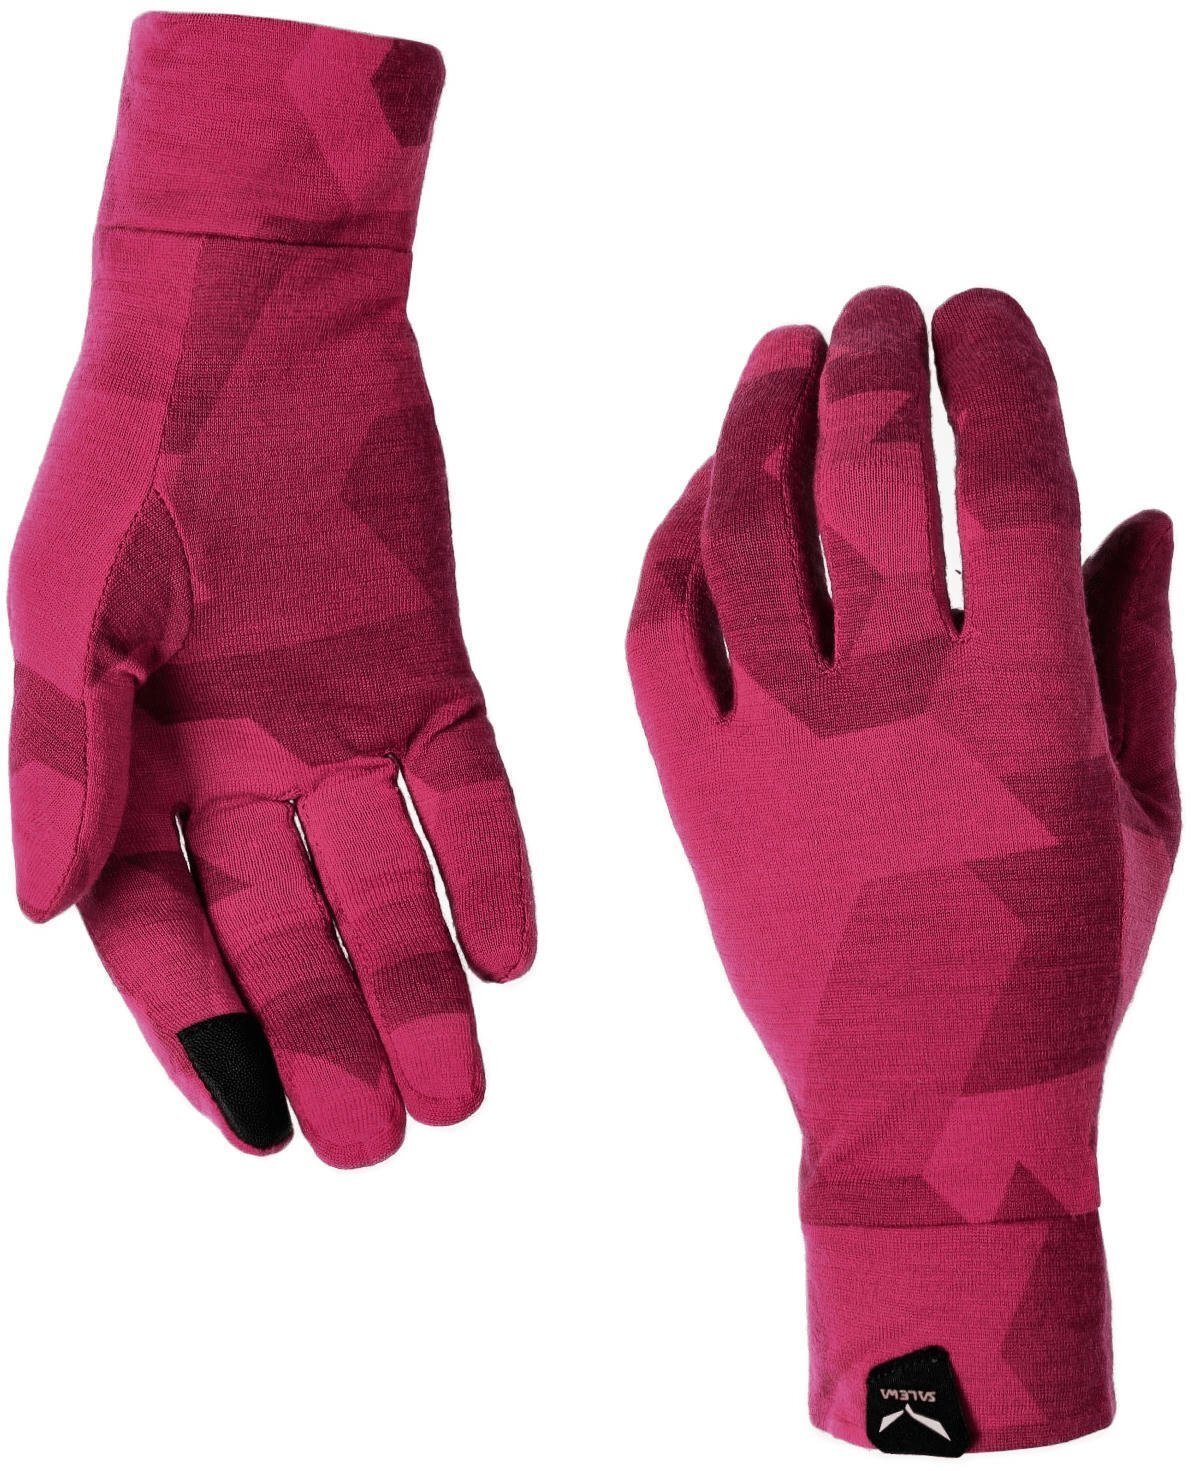 Рукавички жіночі Salewa Cristallo W Gloves 28514 6319 8/L рожевийфото3